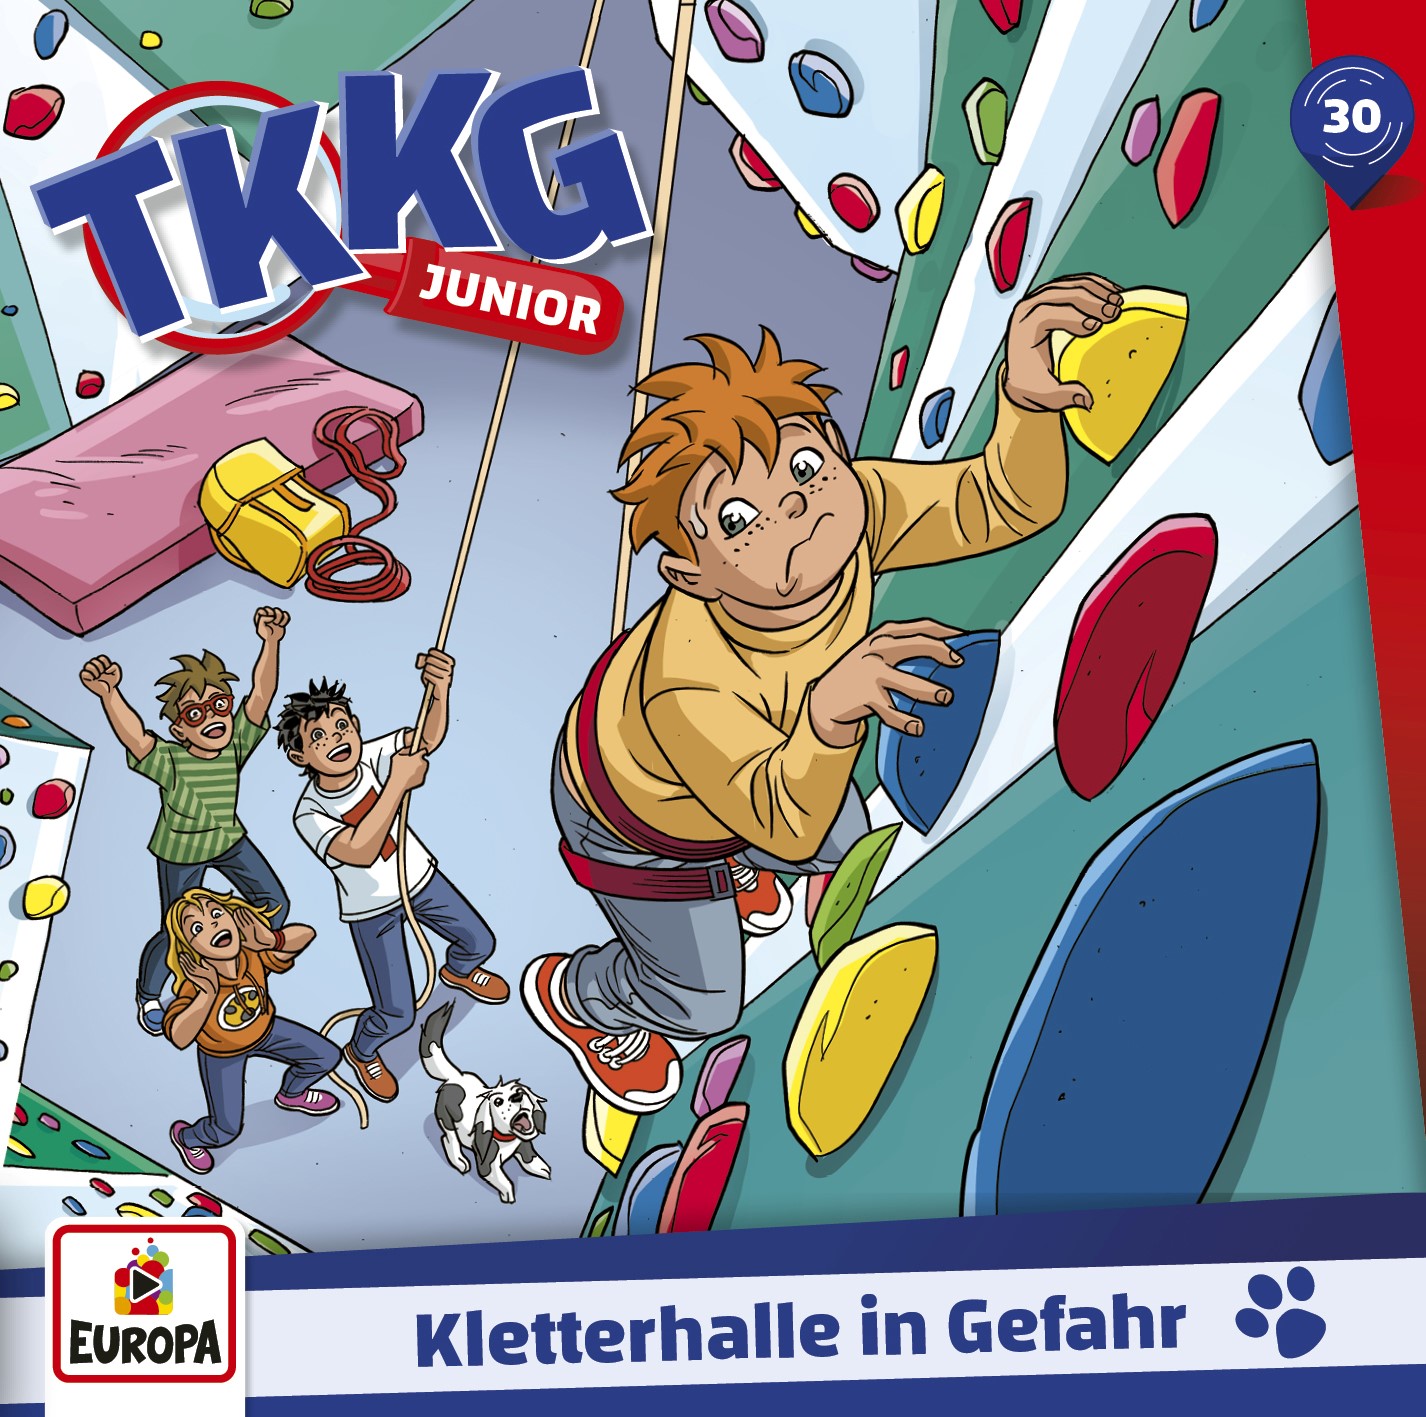 TKKG Junior: Kletterhalle in Gefahr